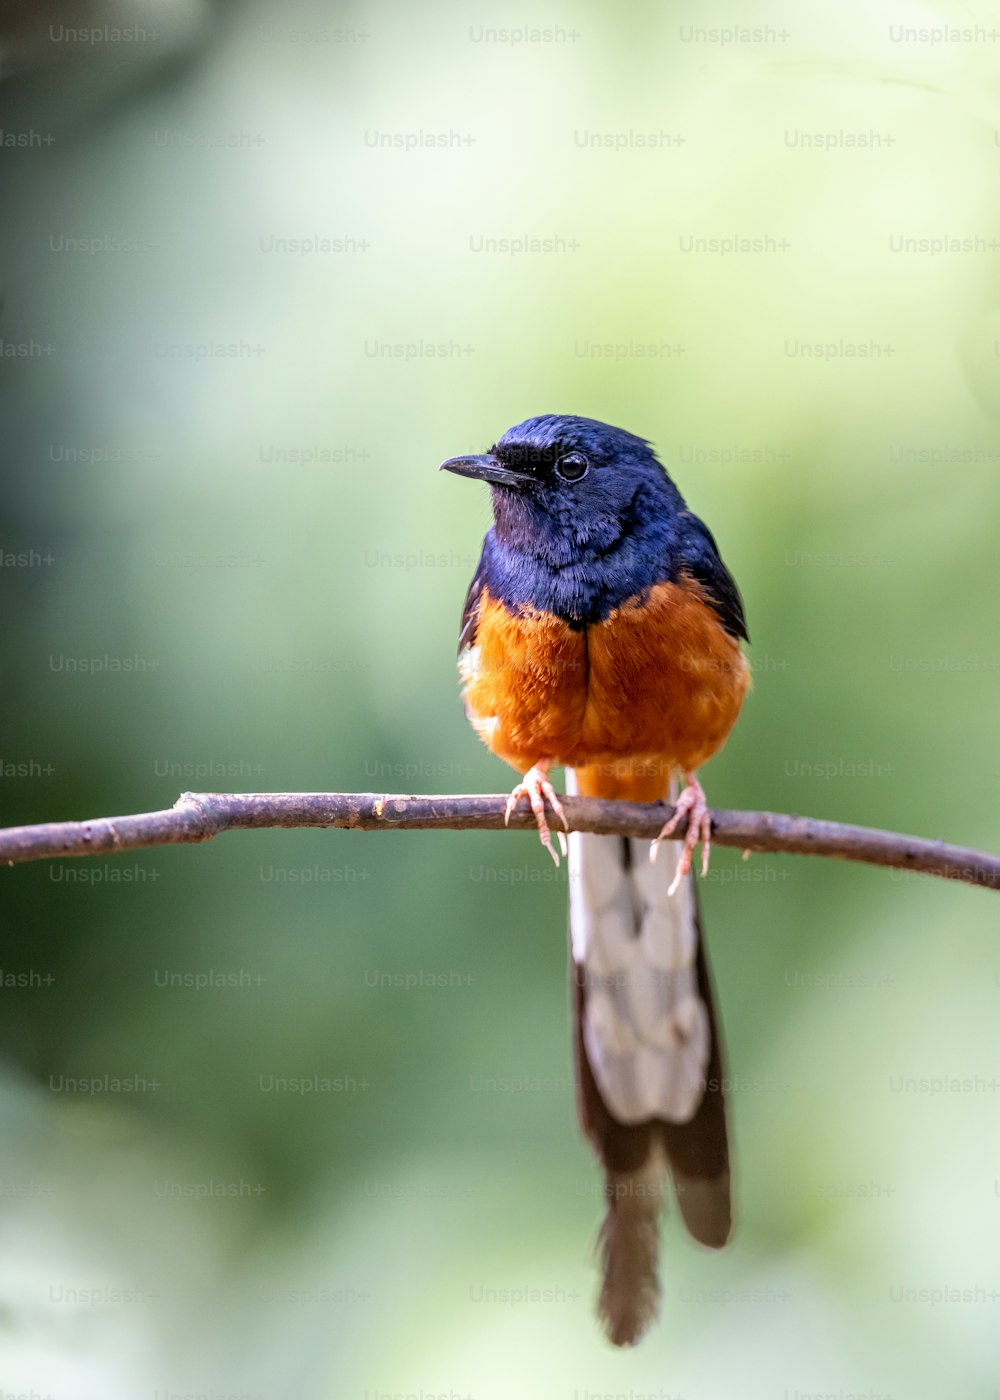 Un pequeño pájaro azul y naranja sentado en una rama